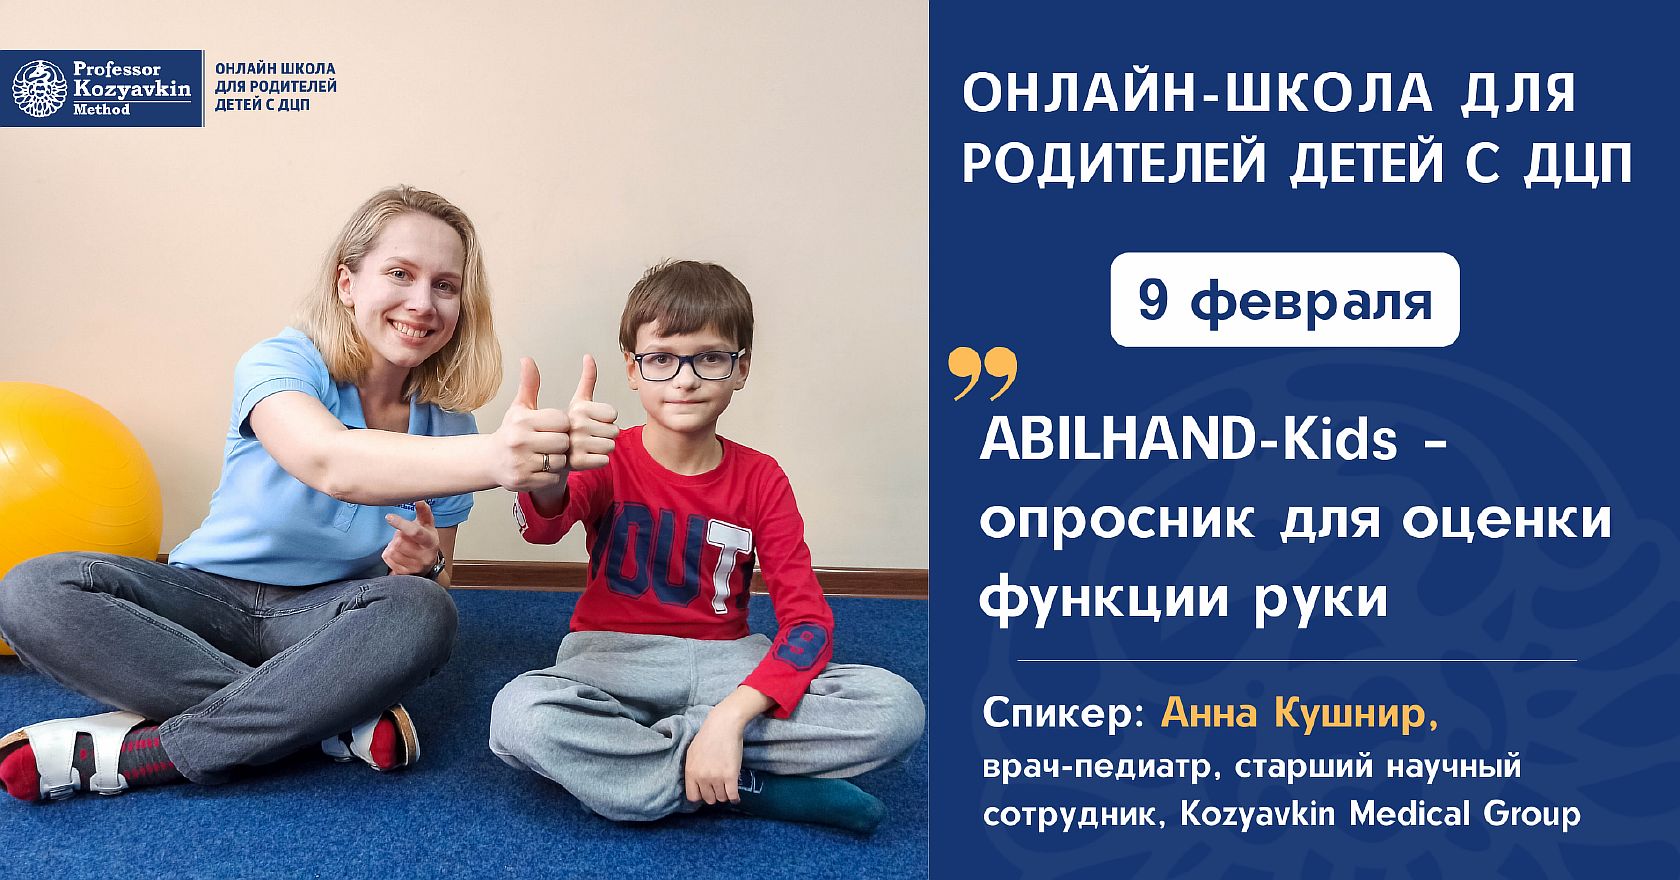 
ABILHAND-Kids – опросник для оценки функции руки
